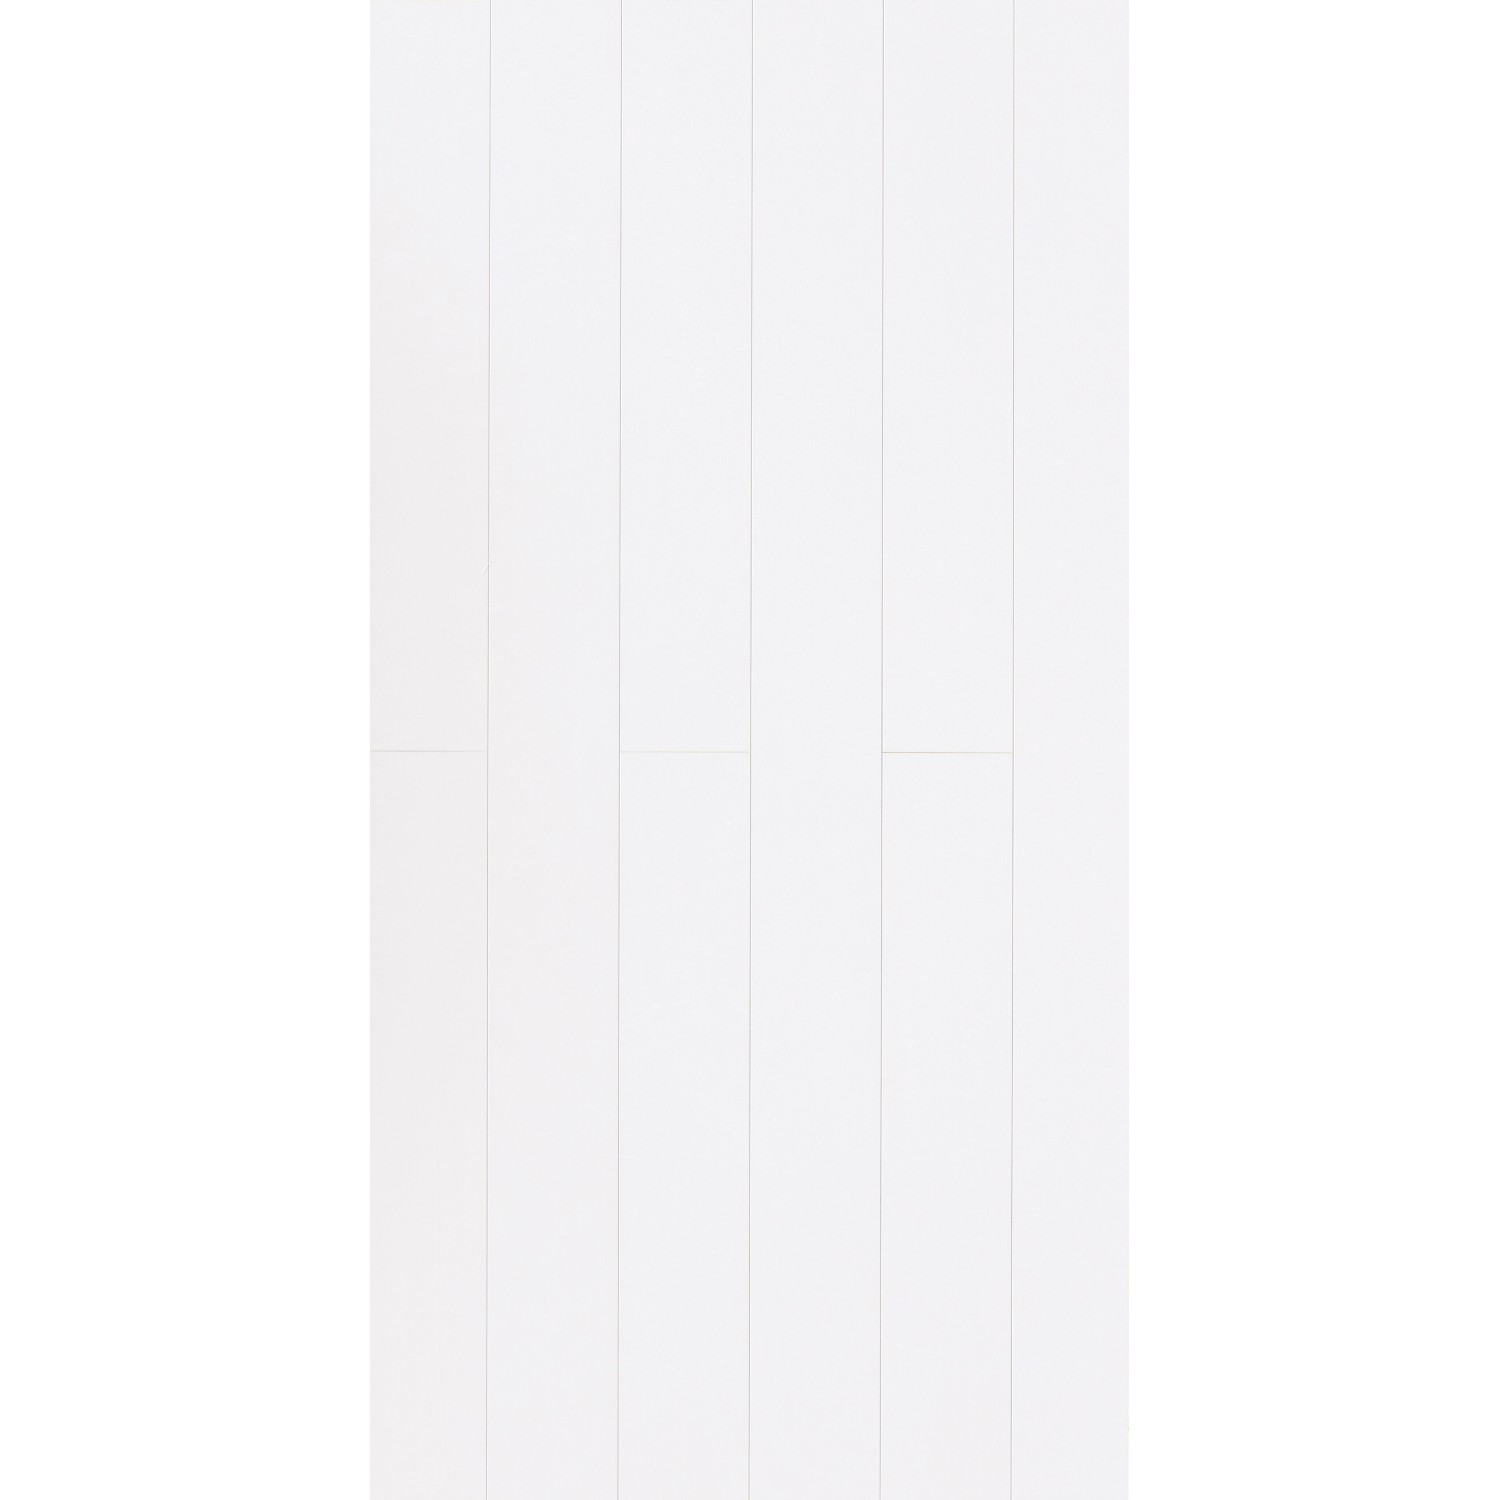 Parador Dekorpaneel RapidoClick 258,5 cm x 22,3 cm Weiß Hochglanz von Parador